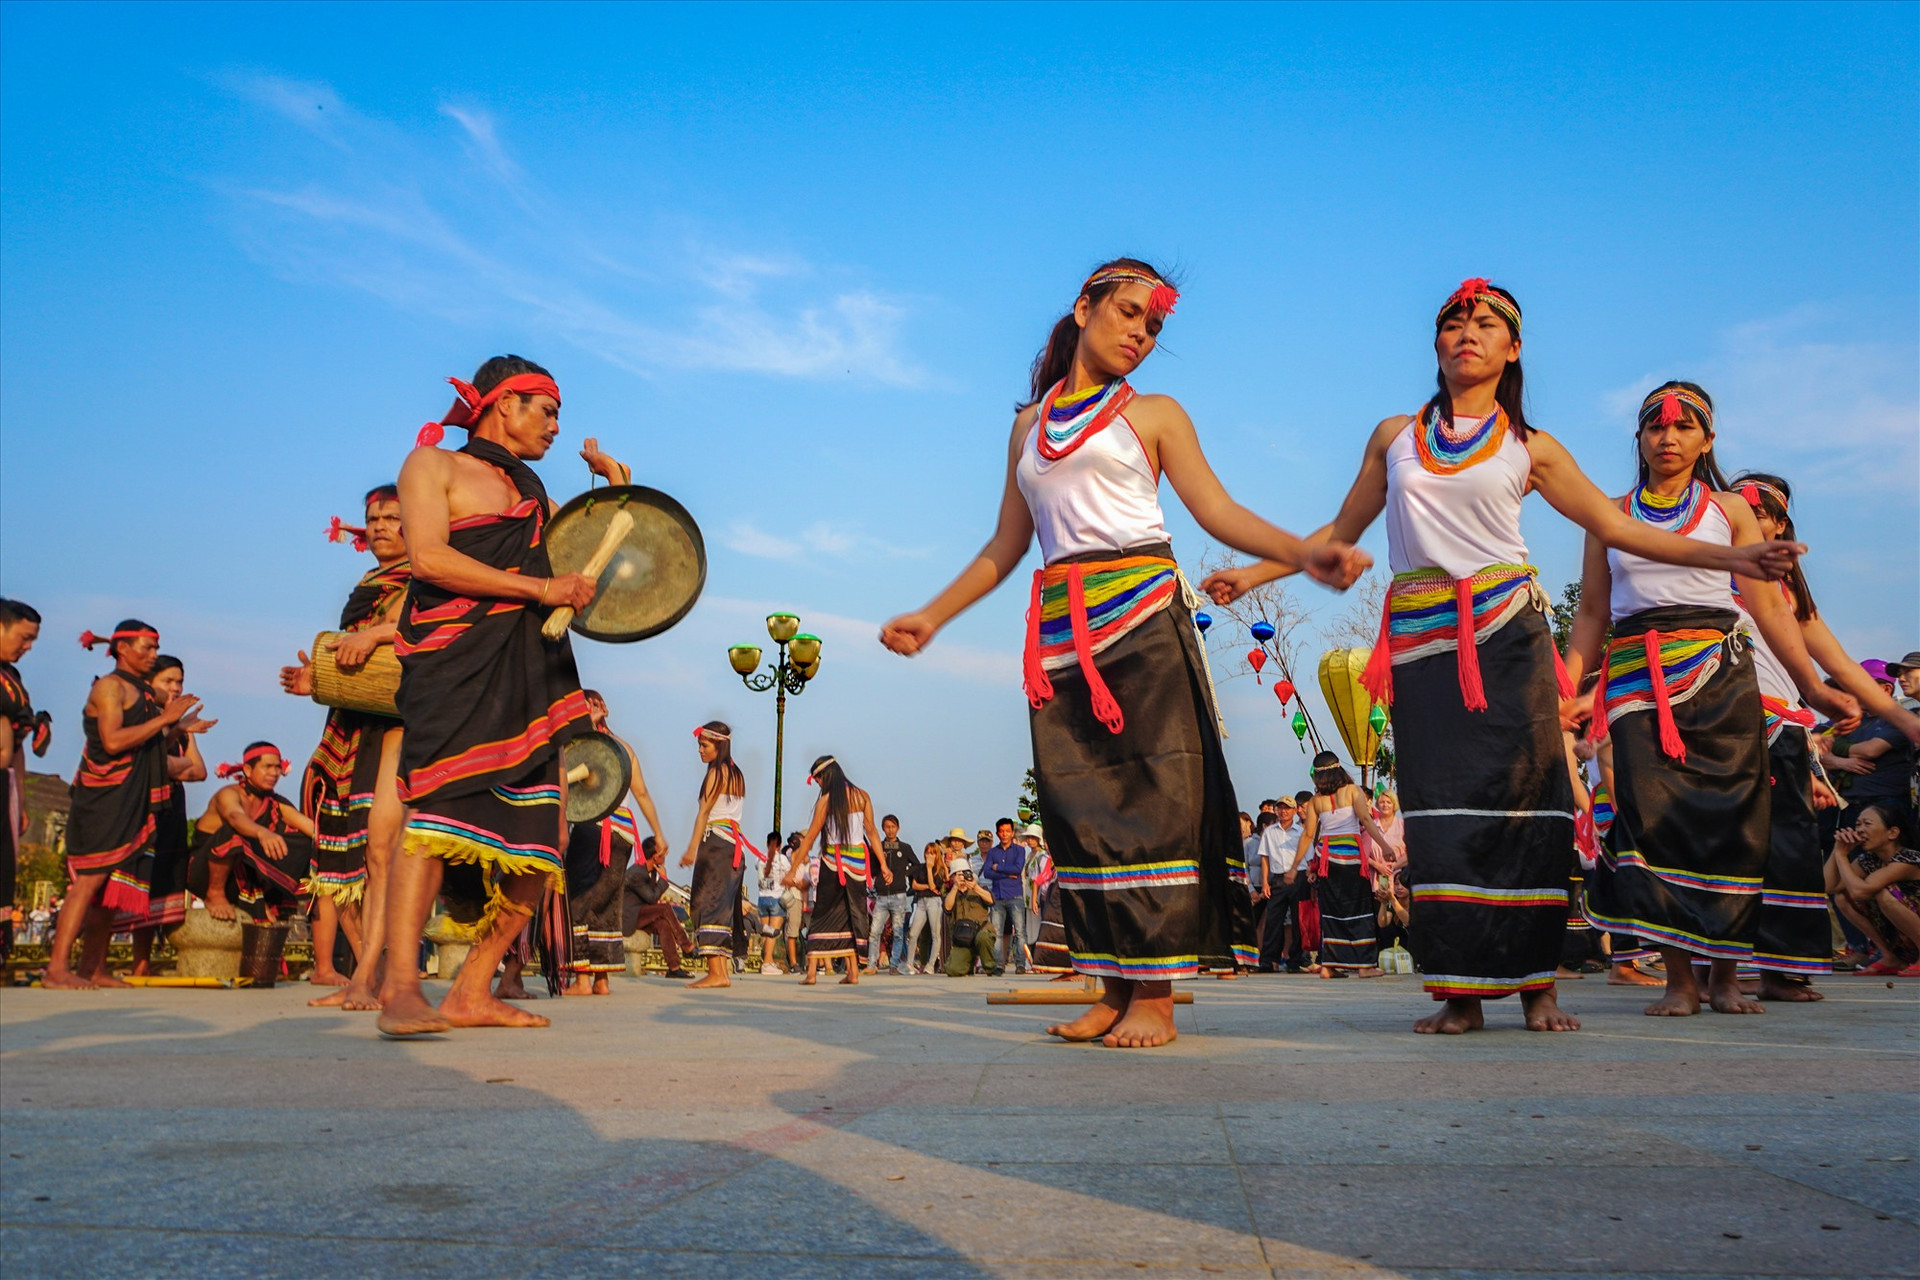 Điệu múa kađtấu của người Co tại sự kiện Ngày hội văn hóa các dân tộc thiểu số tỉnh Quảng Nam năm 2018 tổ chức tại Hội An. Ảnh: HUY NGUYỄN